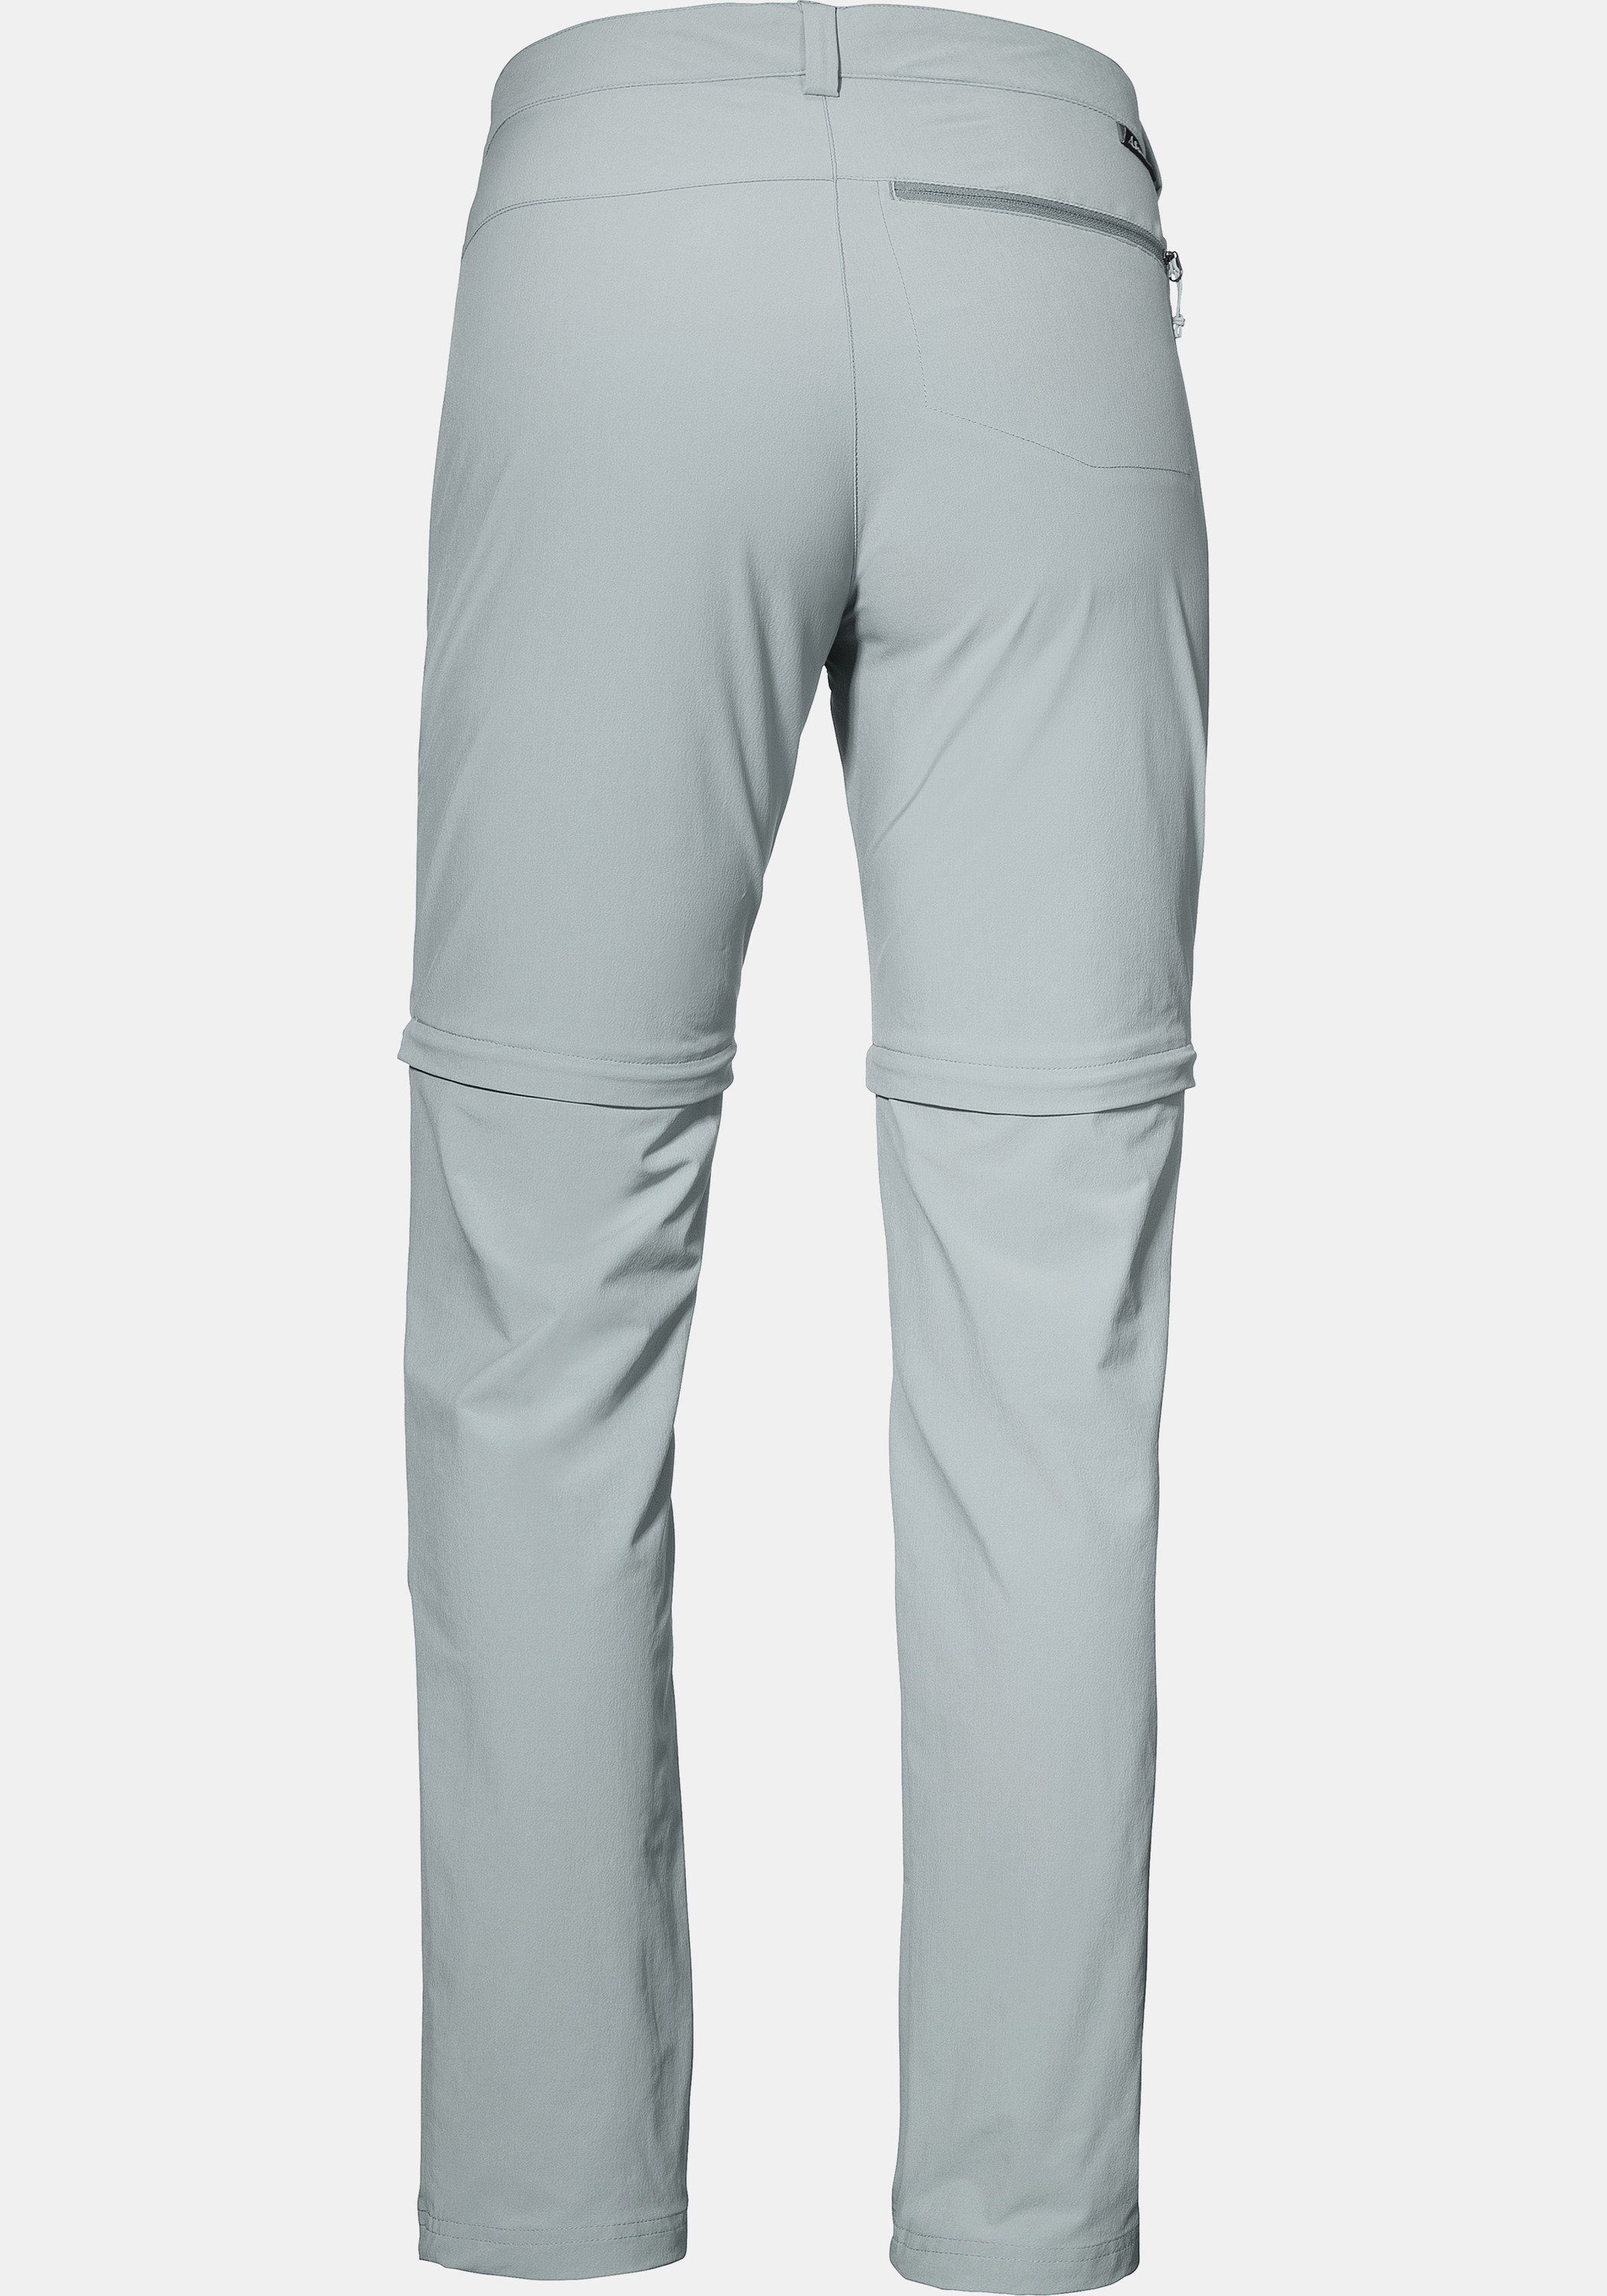 Schöffel Zip-away-Hose grau Pants Zip Off